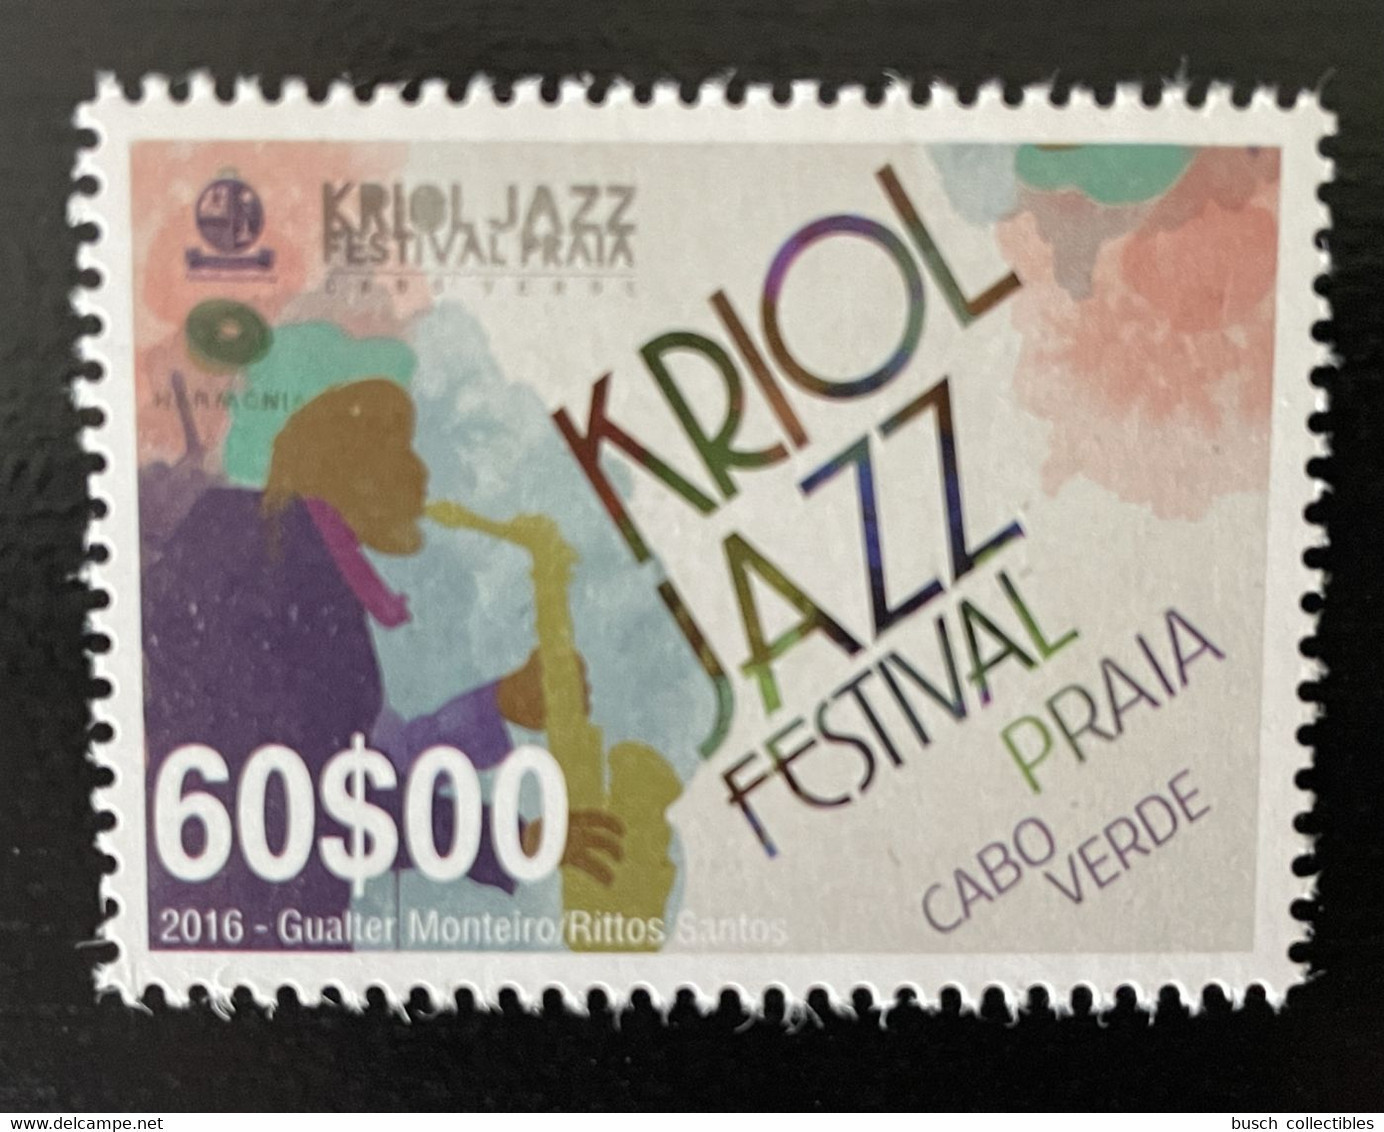 Cape Verde Cabo Verde 2016 Mi. 1039 Kriol Jazz Festival Music Musique Musik - Cape Verde